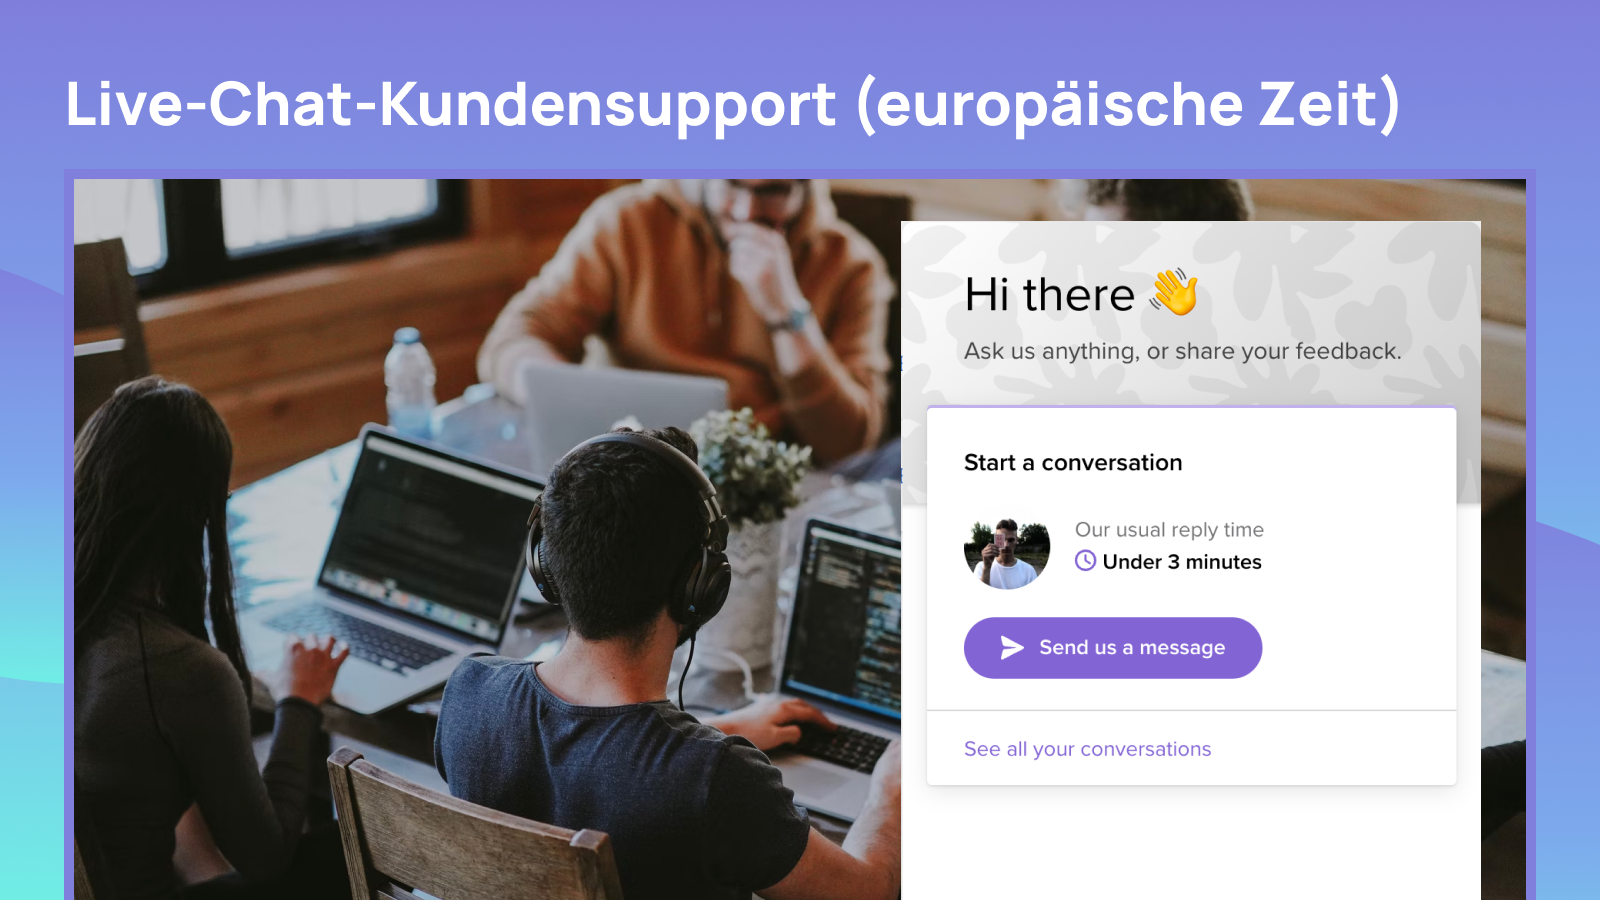 Live-Chat-Kundensupport (europäische Zeit)